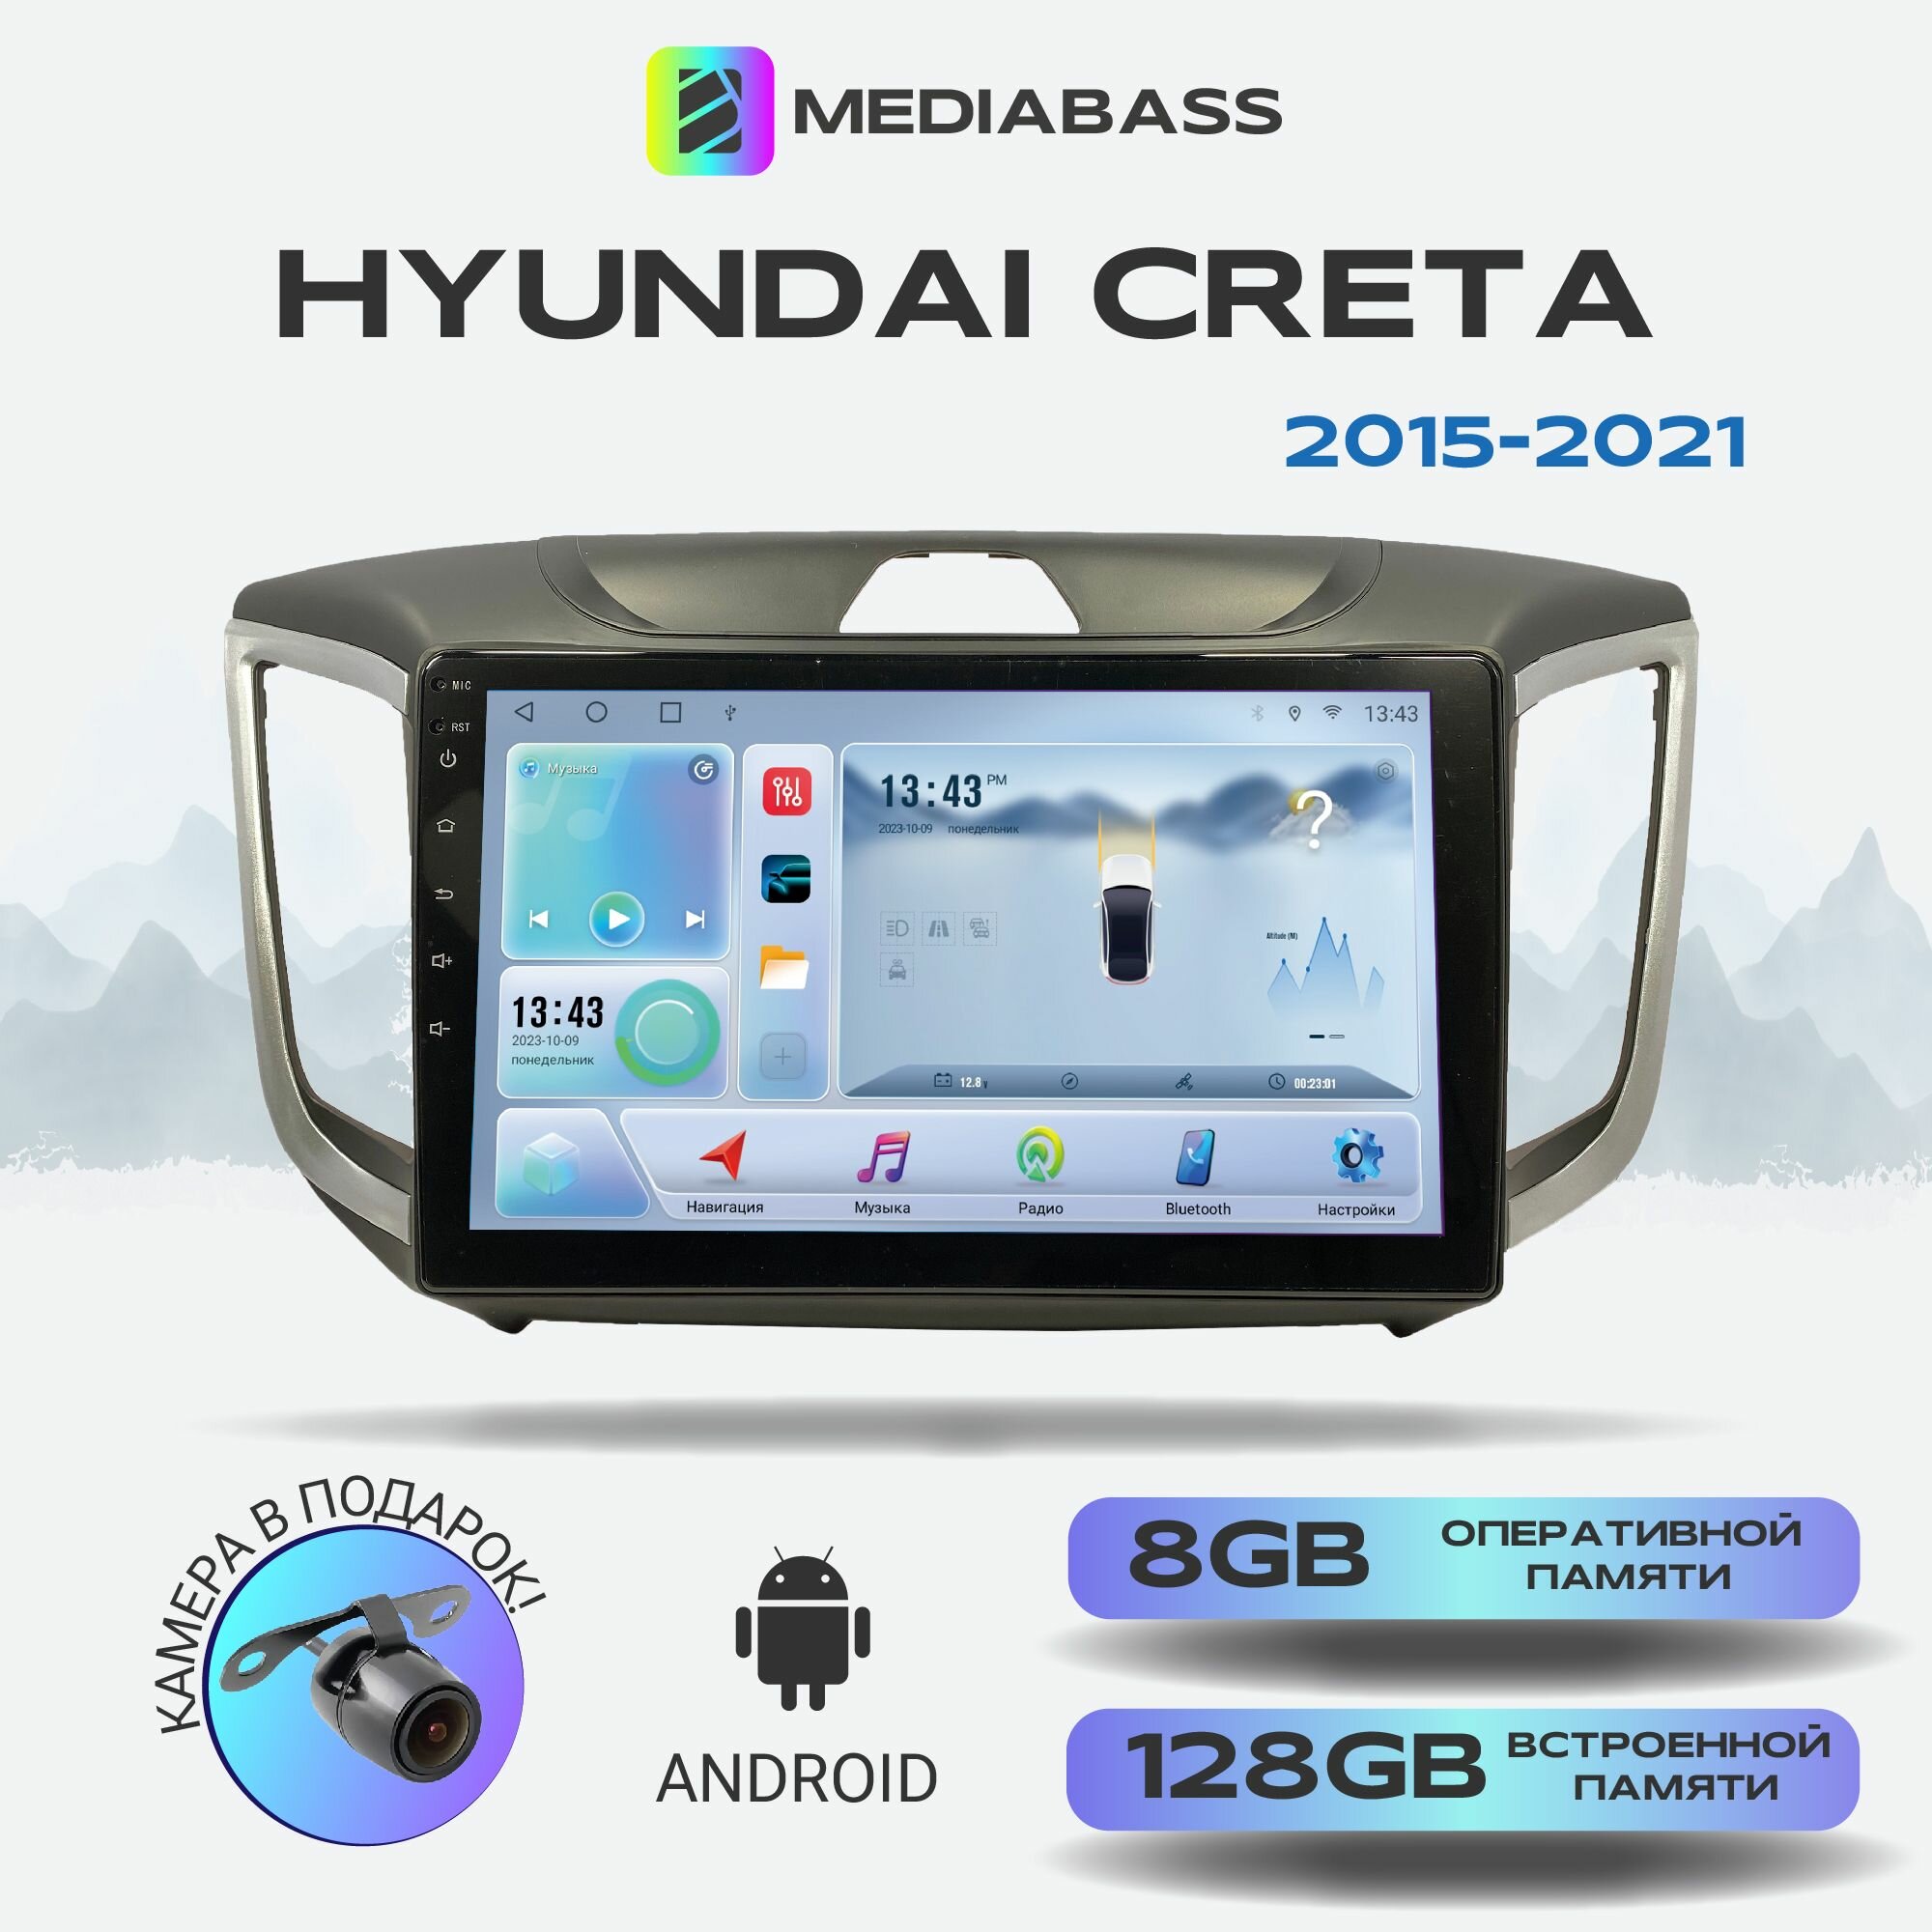 Автомагнитола Mediabass Hyundai Creta, Android 12, 8/128ГБ, 8-ядерный процессор, DSP, 4G модем, голосовое управление, чип-усилитель TDA7851, 4G LTE / Хендай Крета